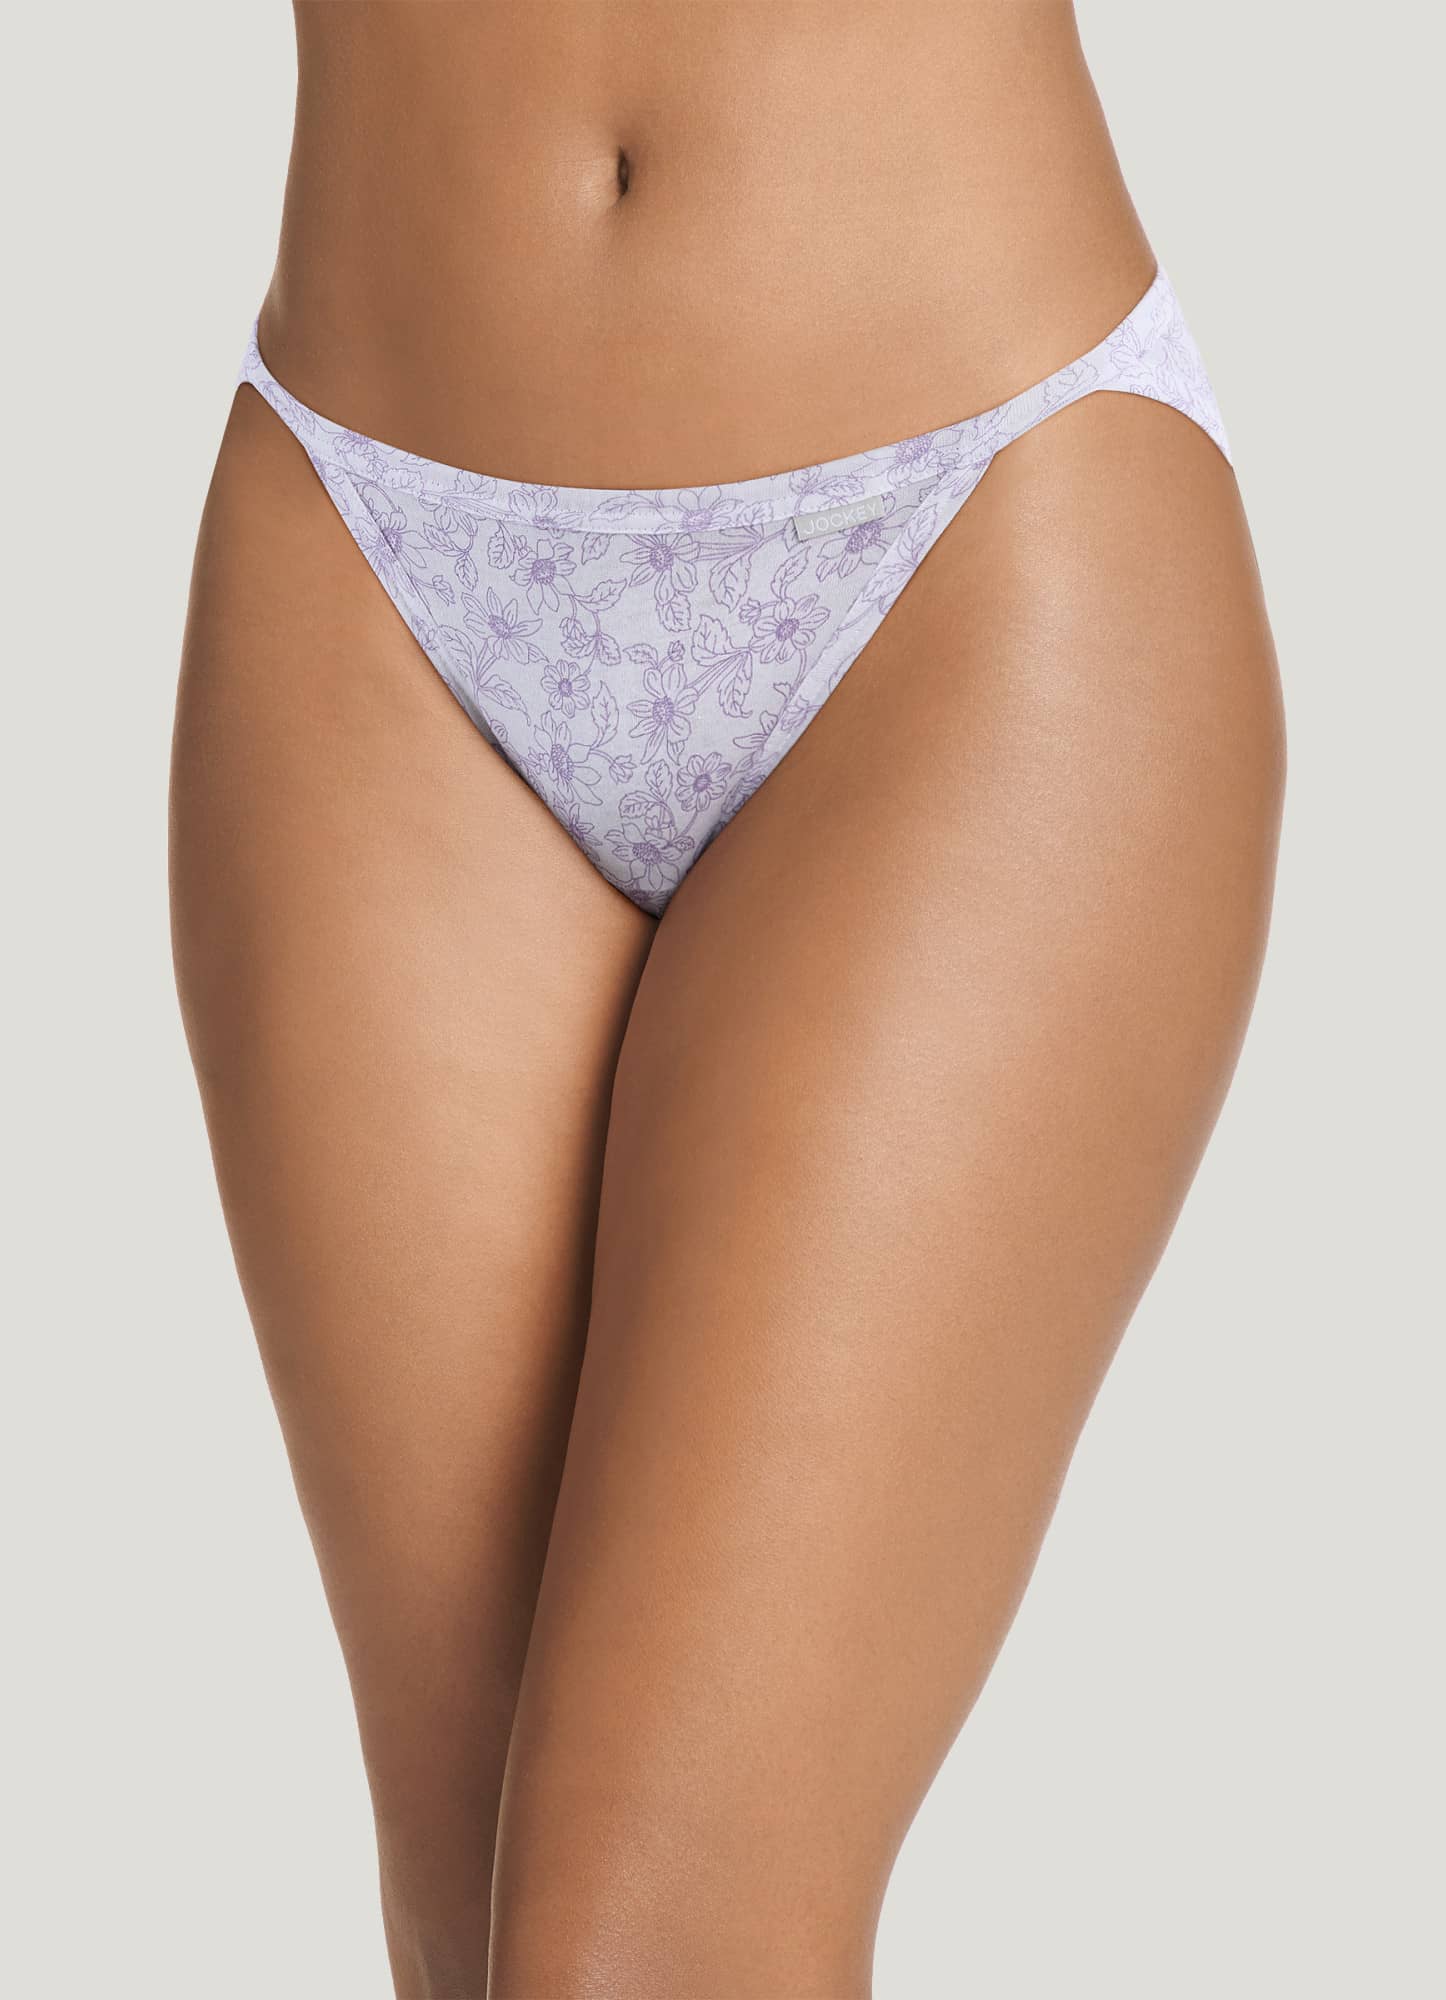 Jockey Panties Women's Underwear Elance String Bikini Style 1483 Sz 7 for  sale online